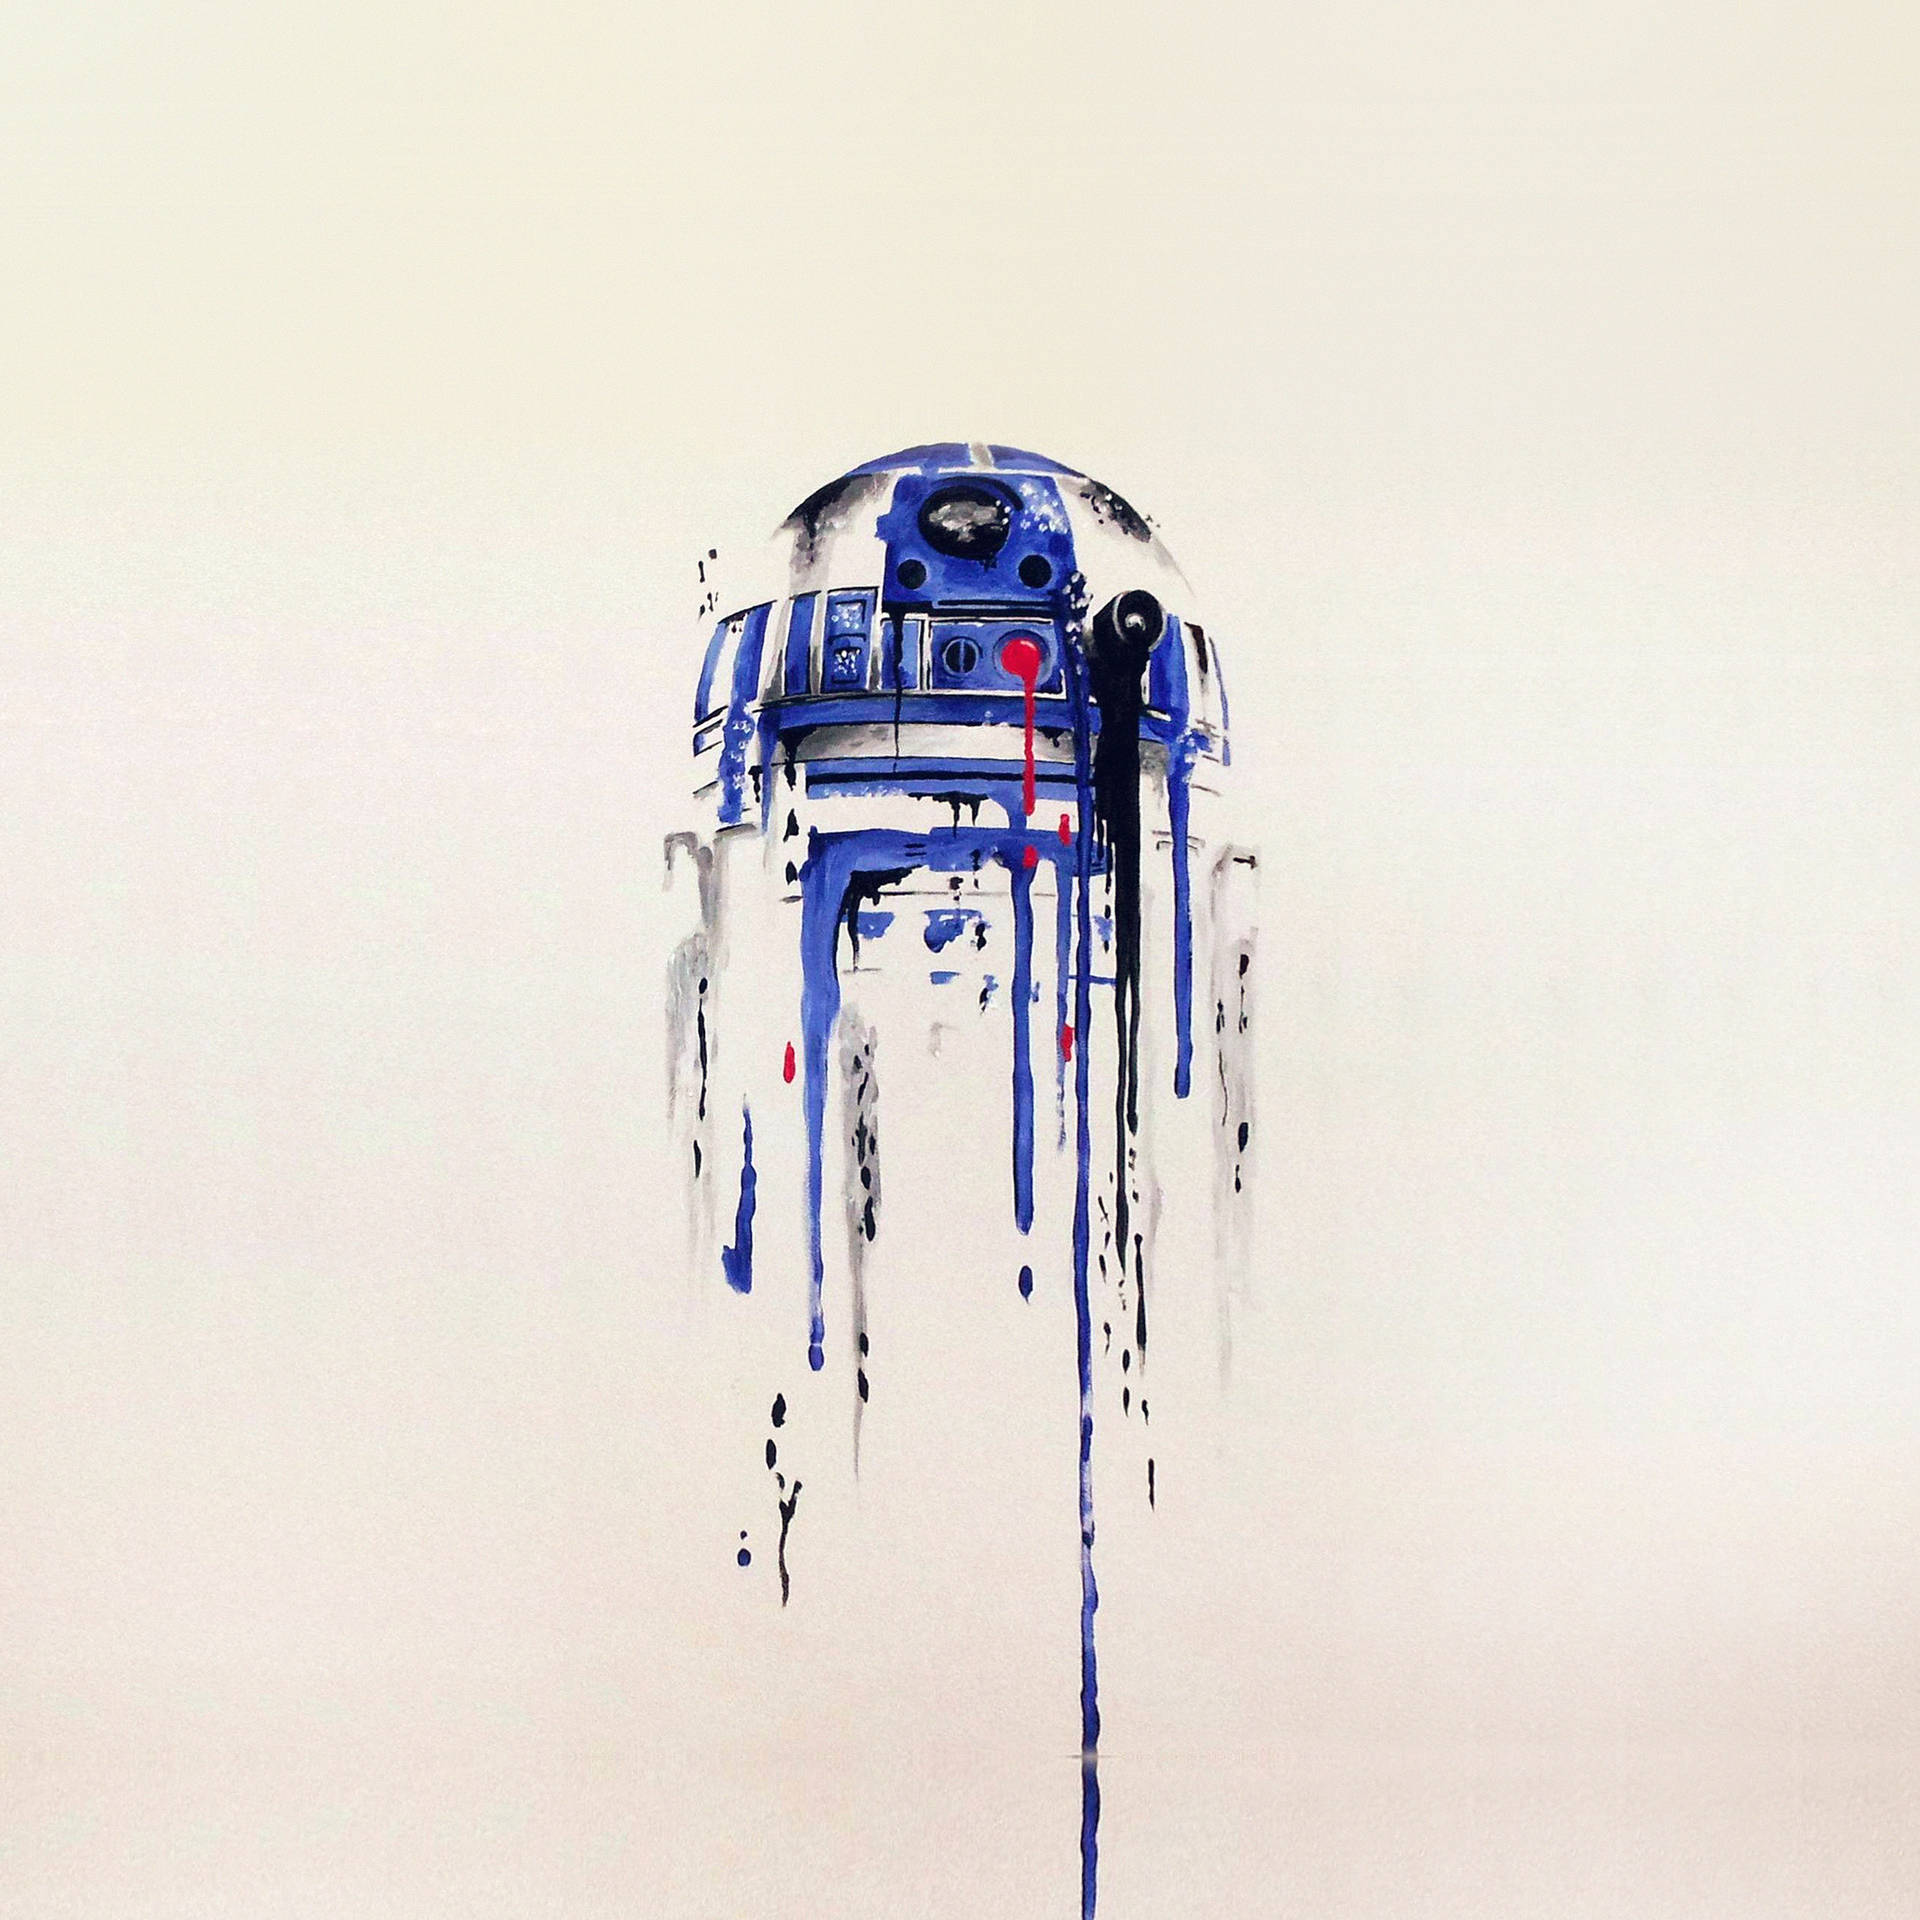 Star Wars Ipad R2-d2 Artwork